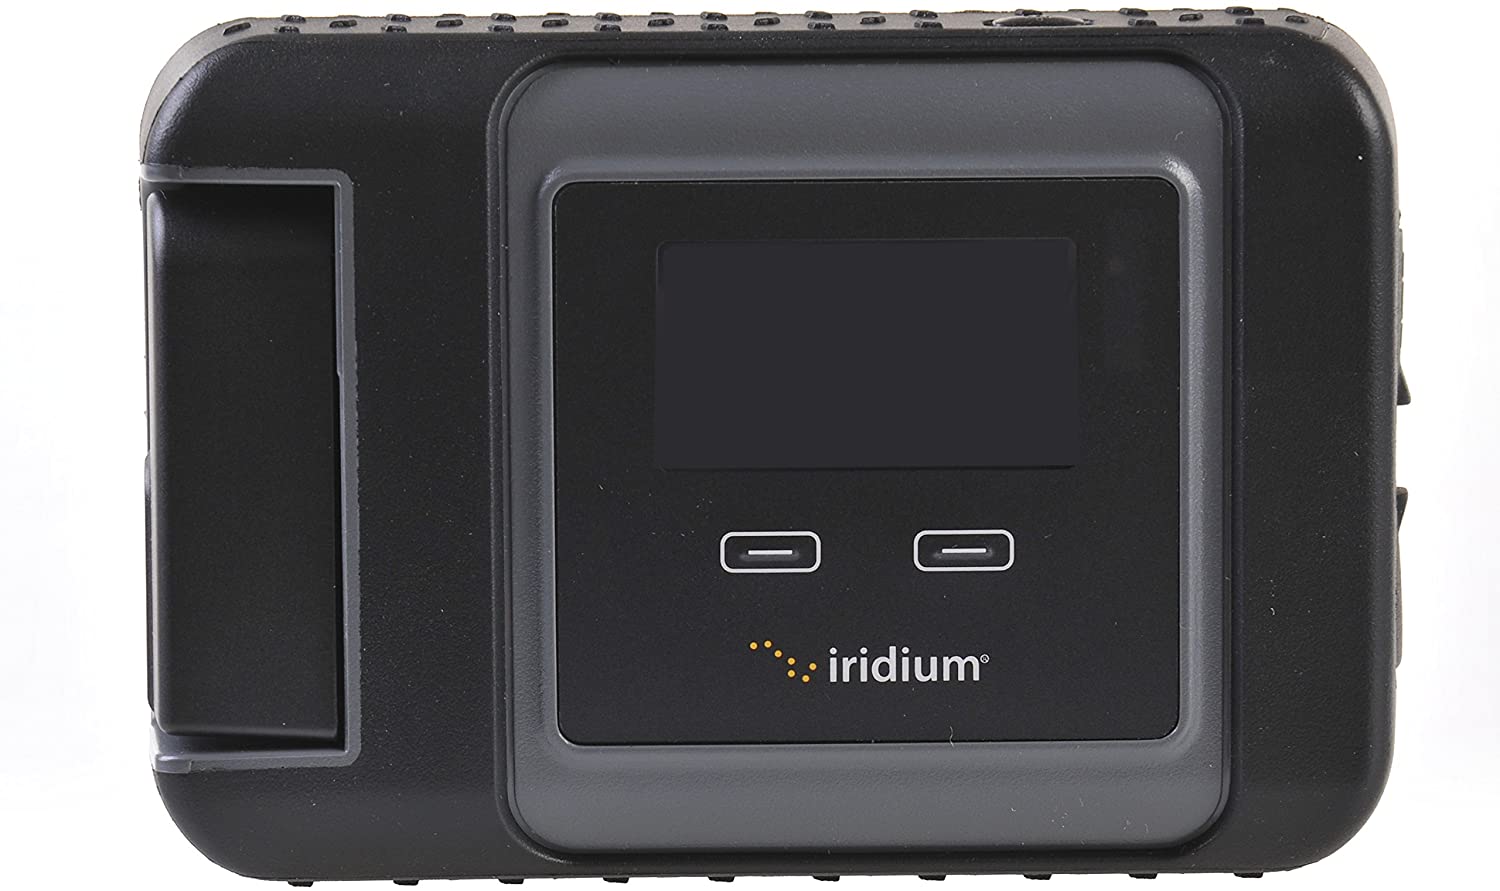 Iridium GO!